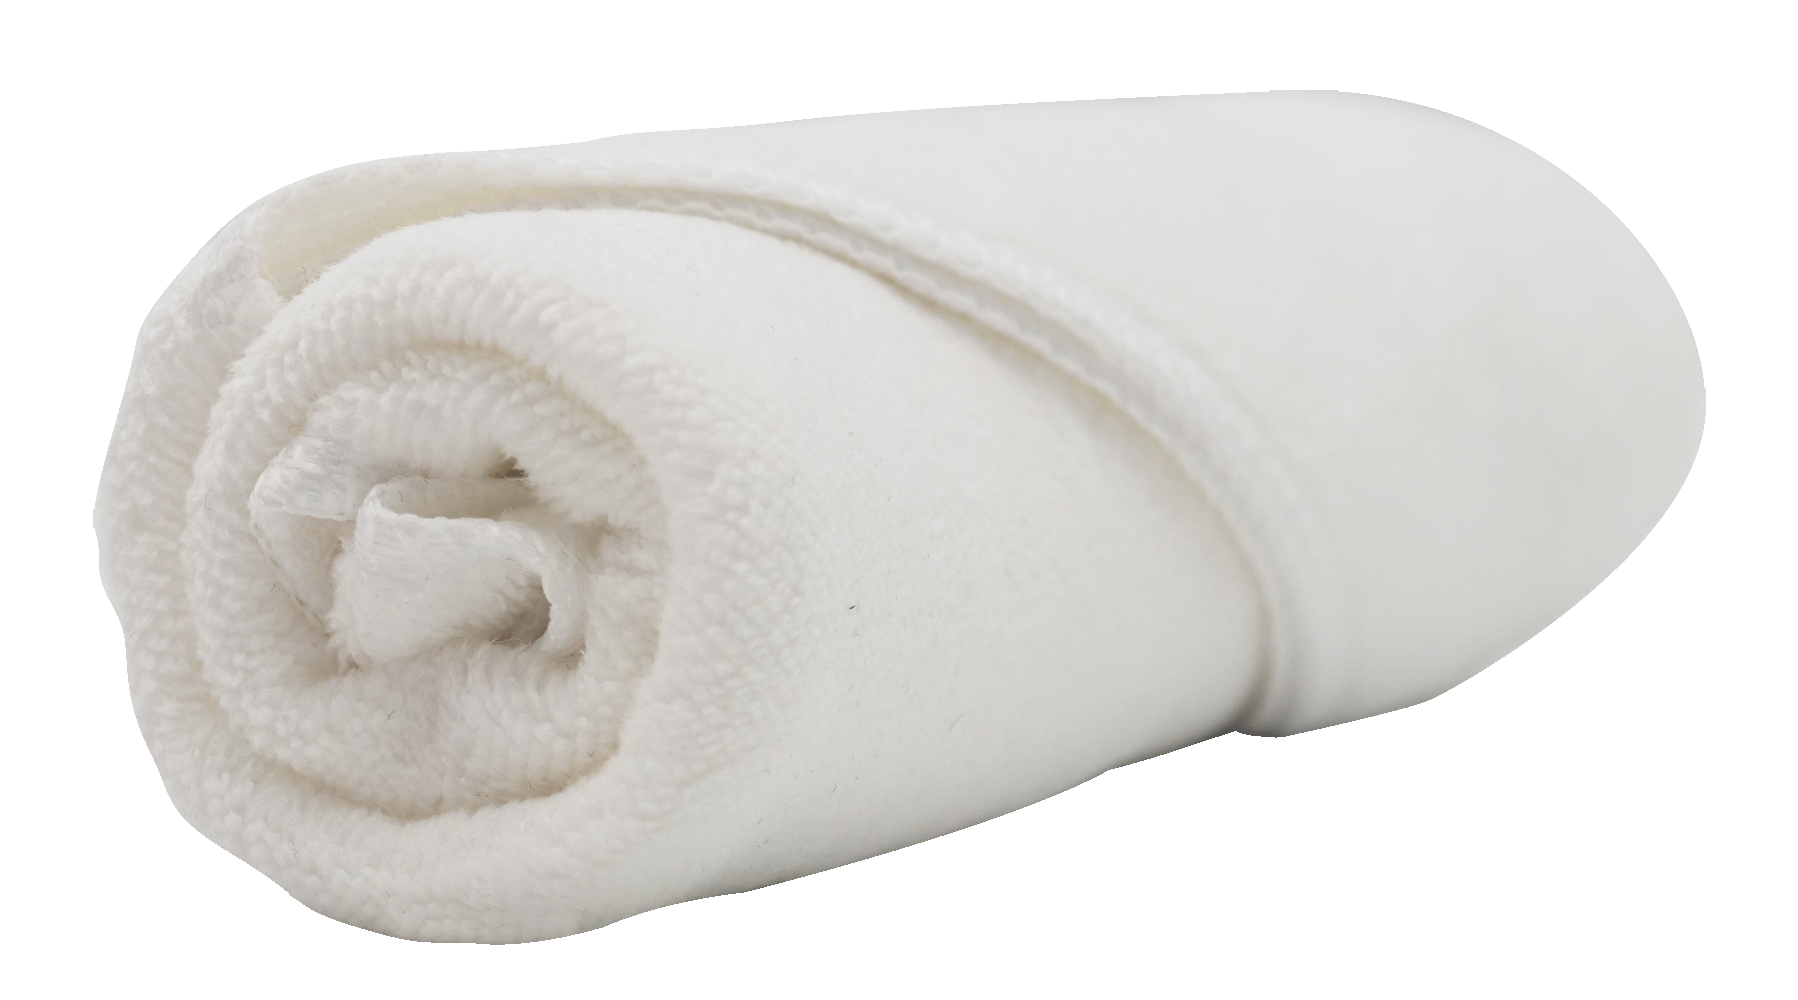 Black Microfiber Towel - Professional Premium Shoe Cleaning Towel, NuLife  Kicks